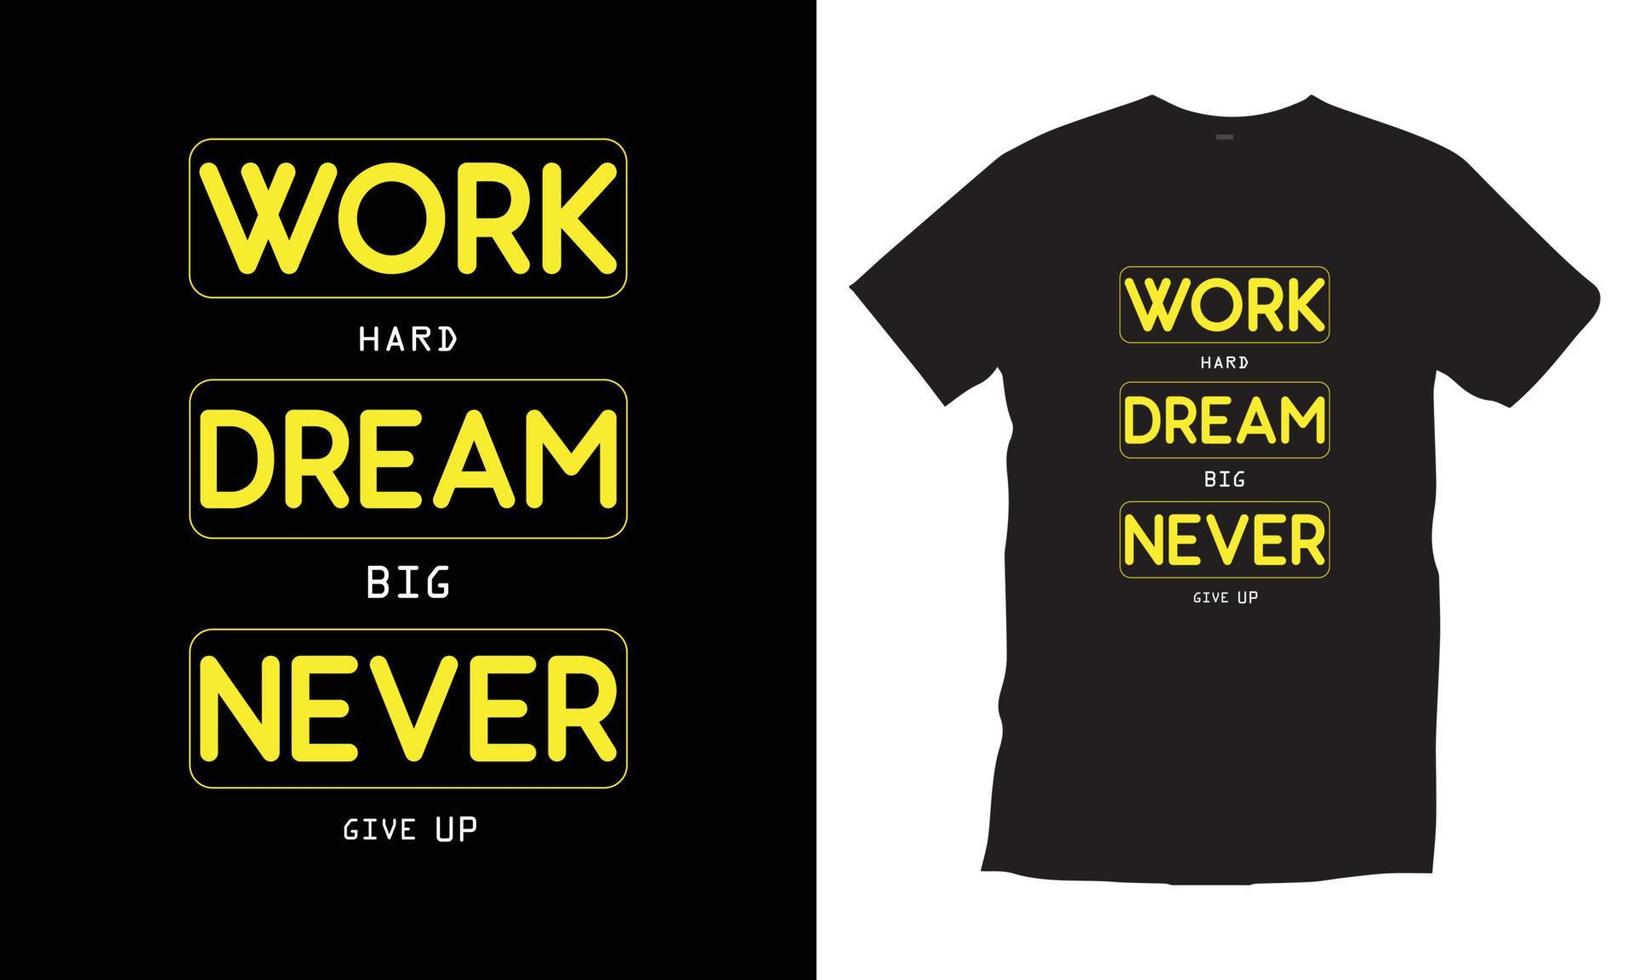 Arbeite hart, träume groß, gib niemals auf. moderne Zitate motivierend inspirierend coole Typografie trendiger schwarzer T-Shirt-Designvektor. vektor